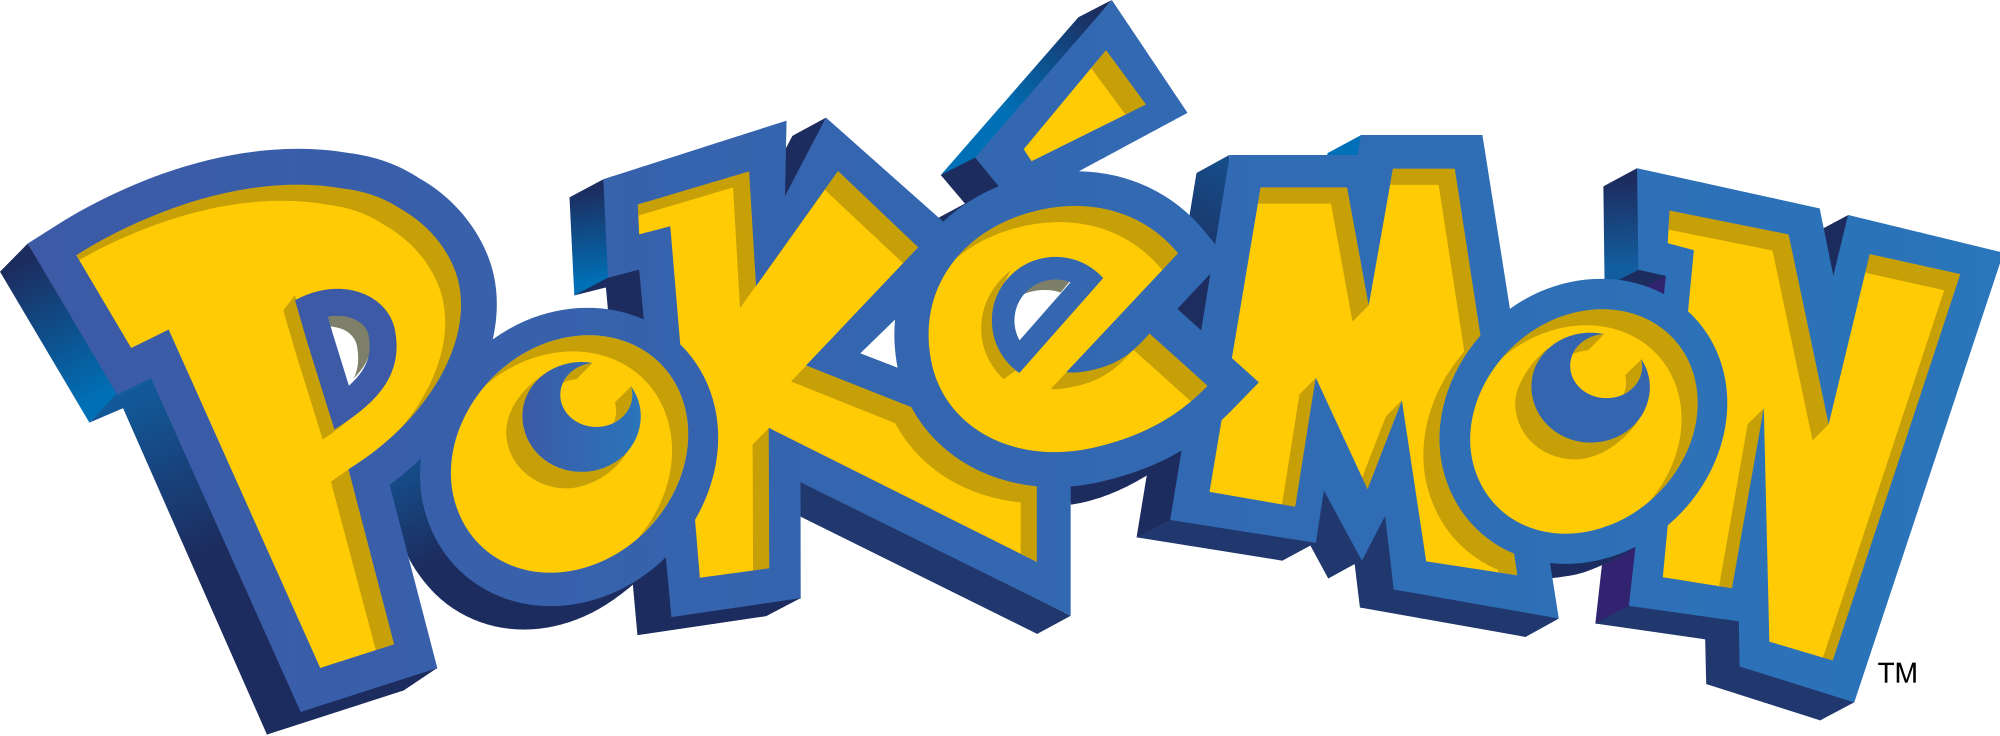 Pokémon Giallo Rosso Blu Videorecensione